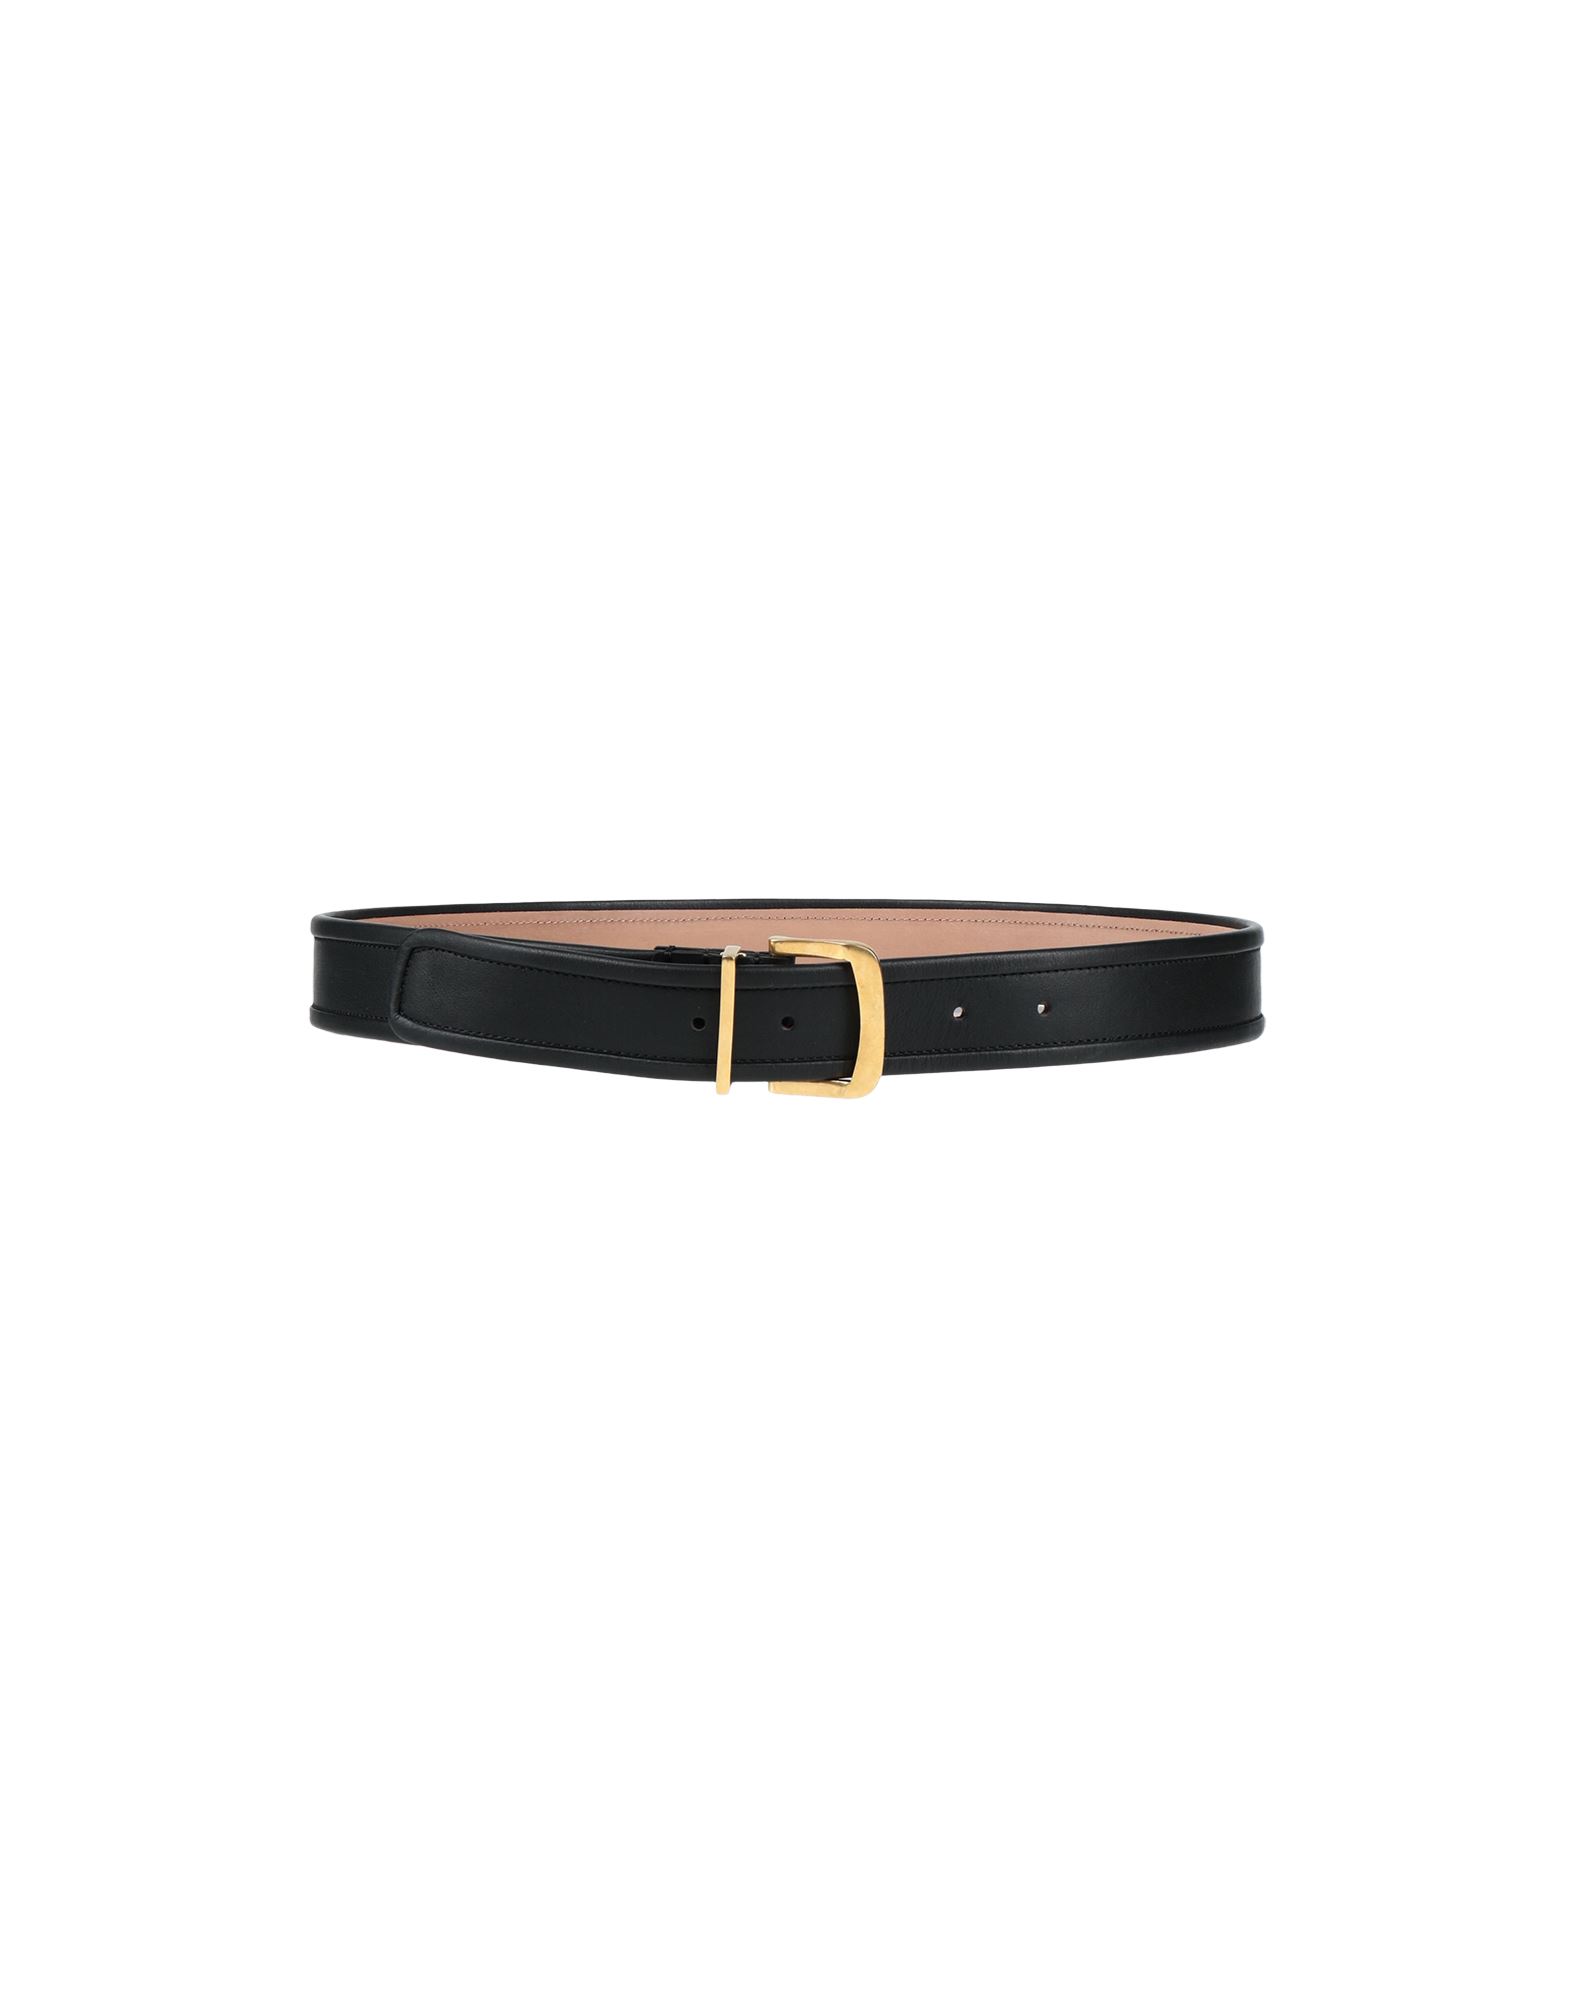 AGNONA Belts | Smart Closet